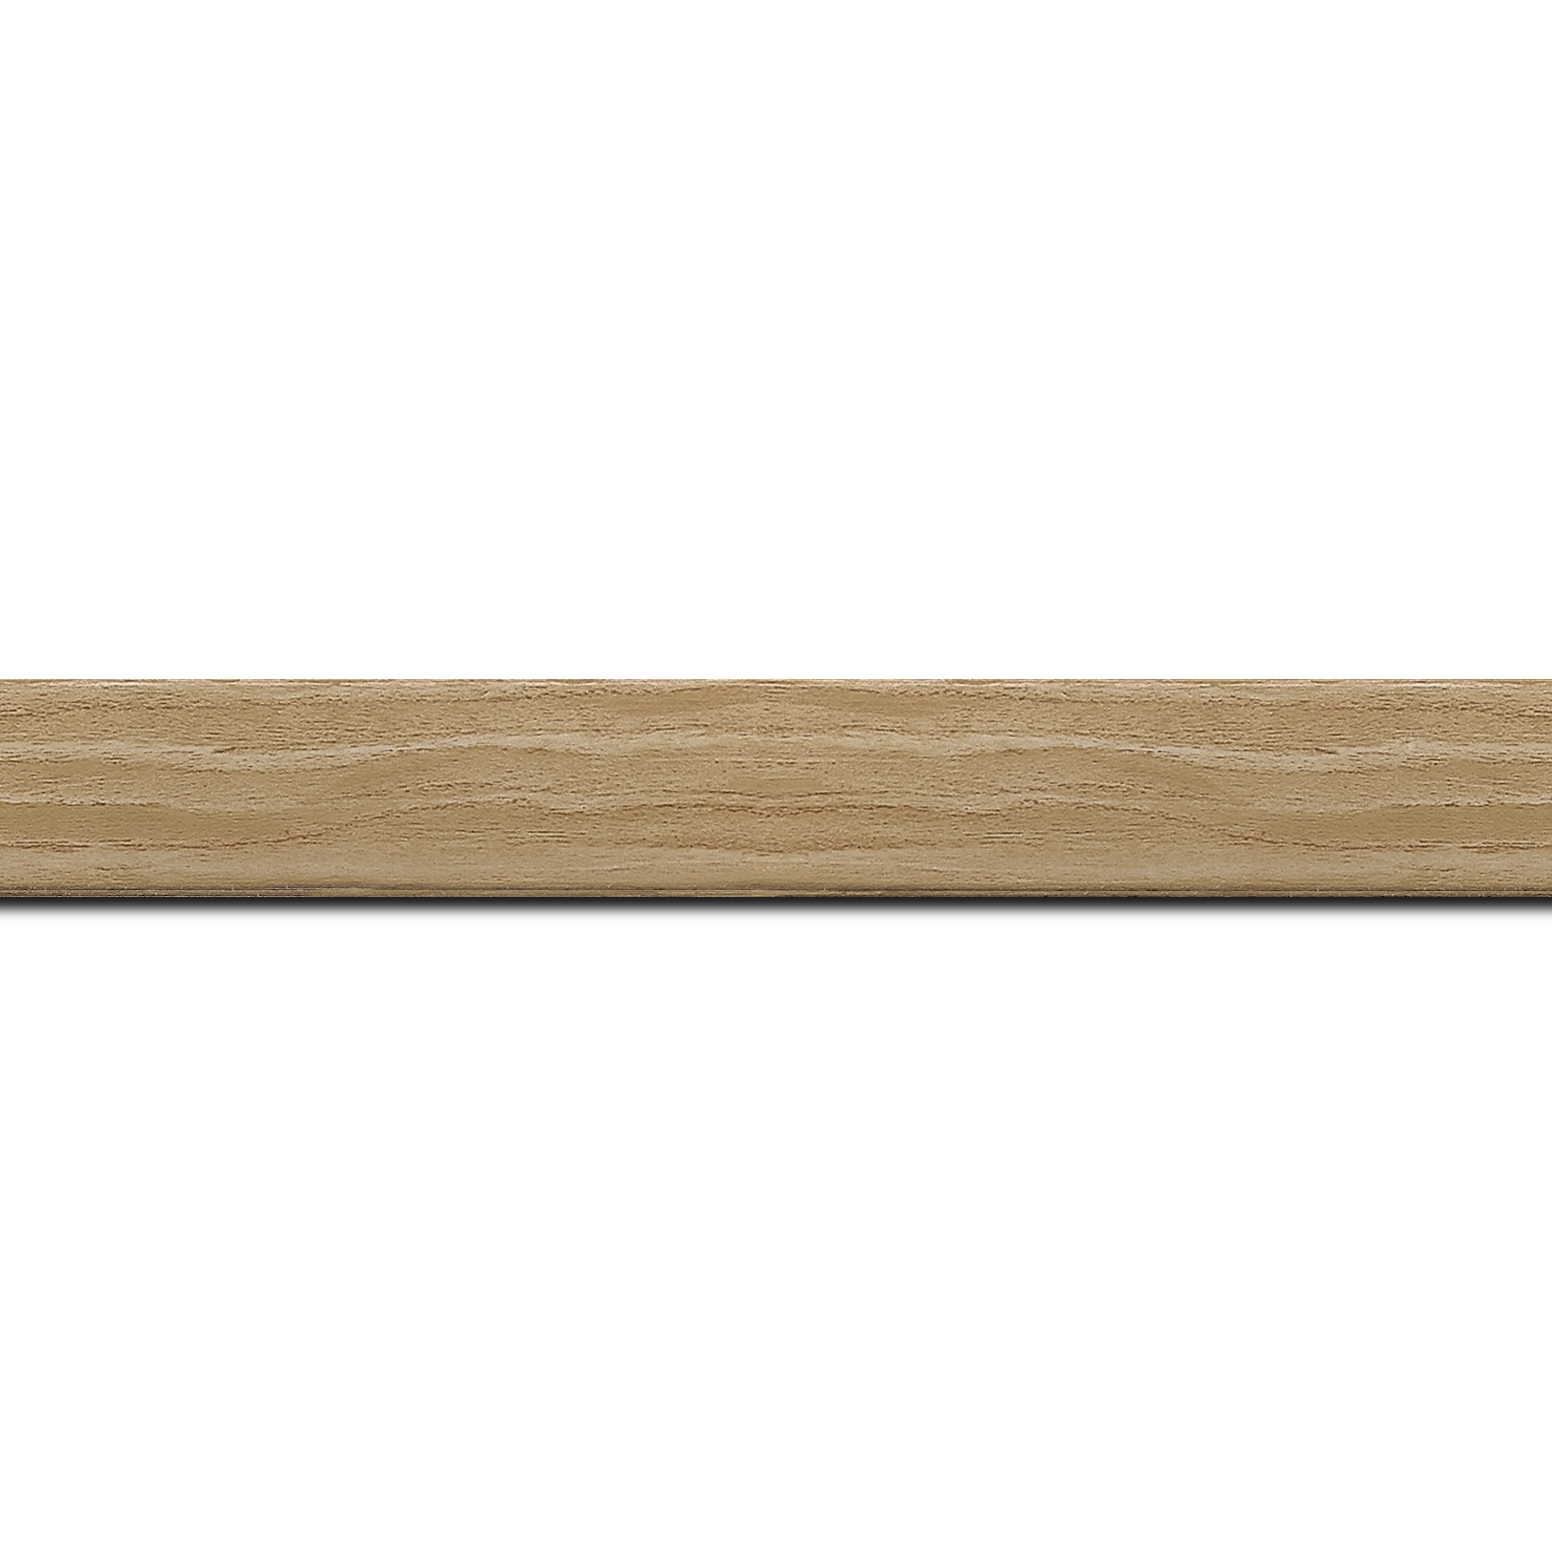 Pack par 12m, bois profil plat largeur 2cm décor bois naturel(longueur baguette pouvant varier entre 2.40m et 3m selon arrivage des bois)